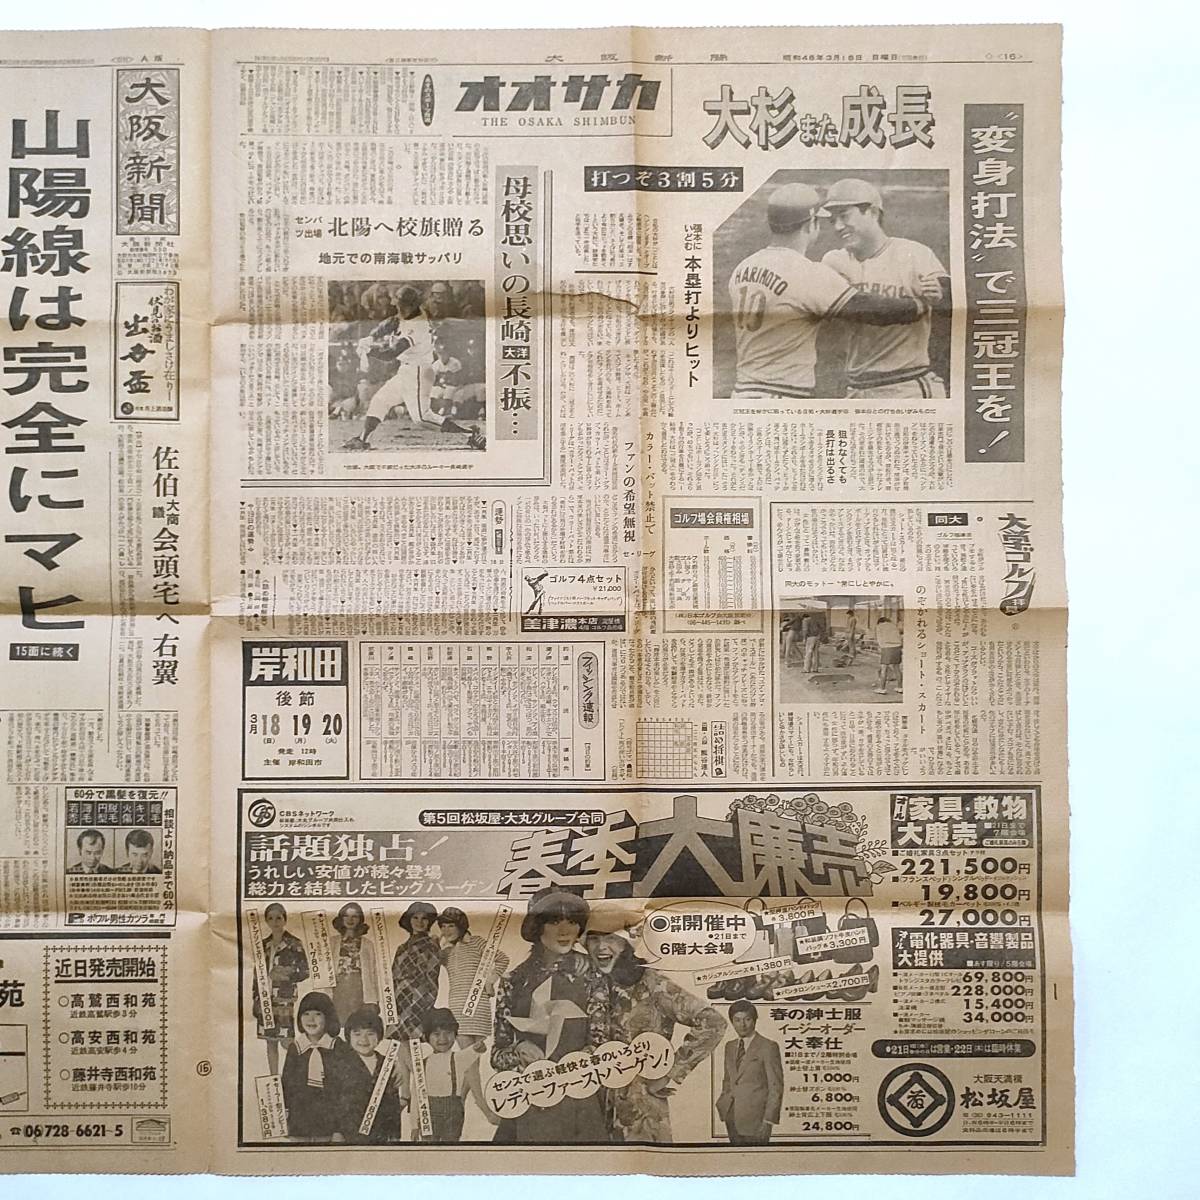 大阪新聞 昭和48年3月18日 動労、半日スト・大景気 今昔、松永定三の画像2